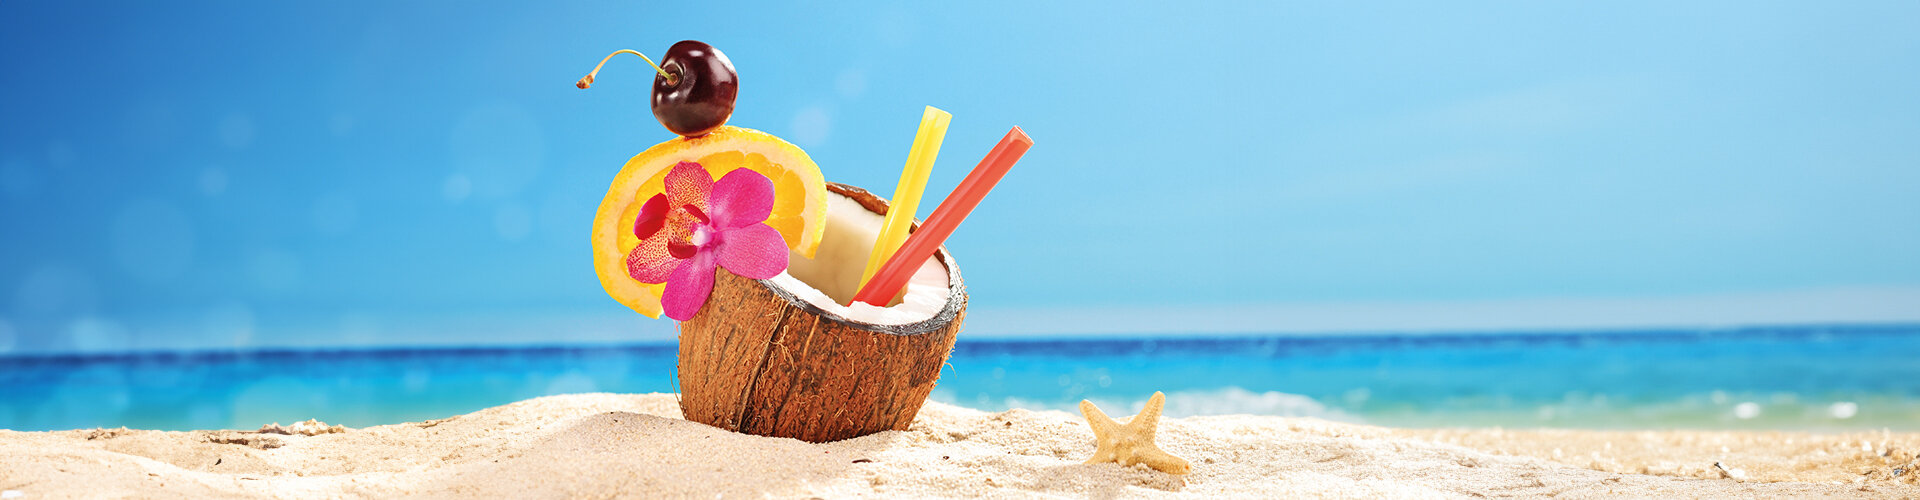 Bild: Cocktail in einer Kokosnuss, Sandstrand und Meer im Hintergrund